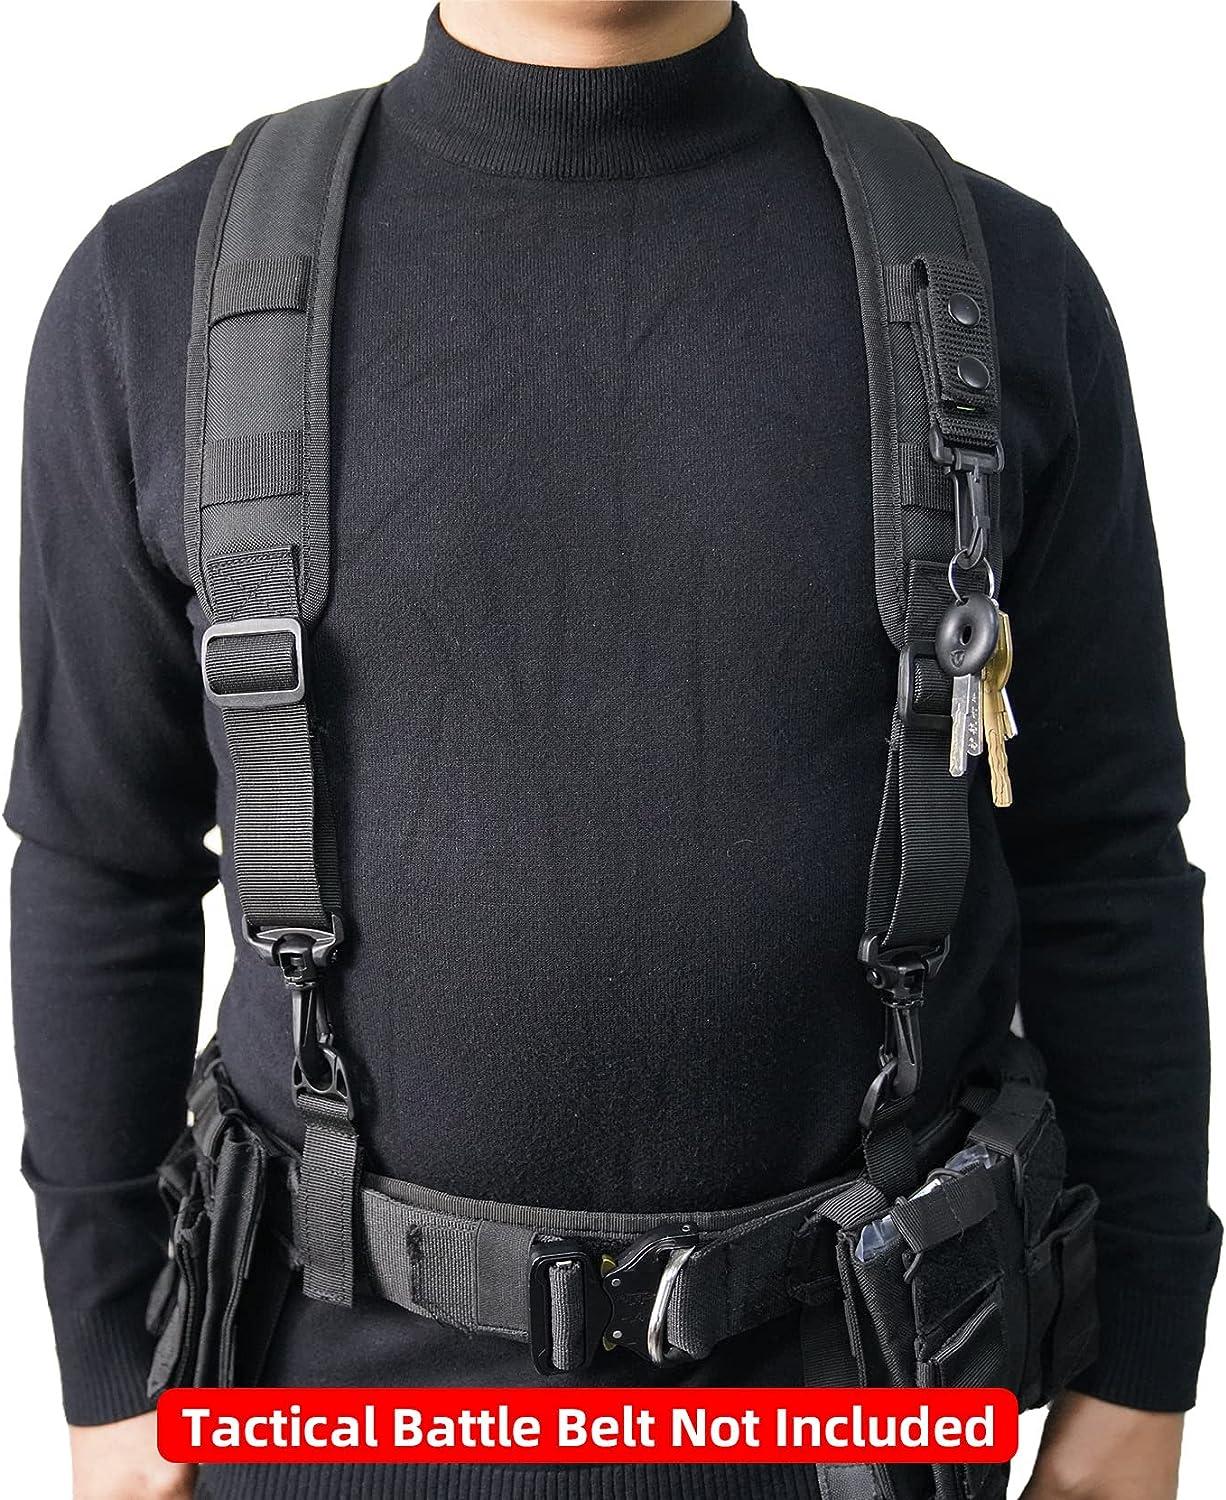 Tactical Suspenders Adjustable Duty Belt Harness Suspenders Black